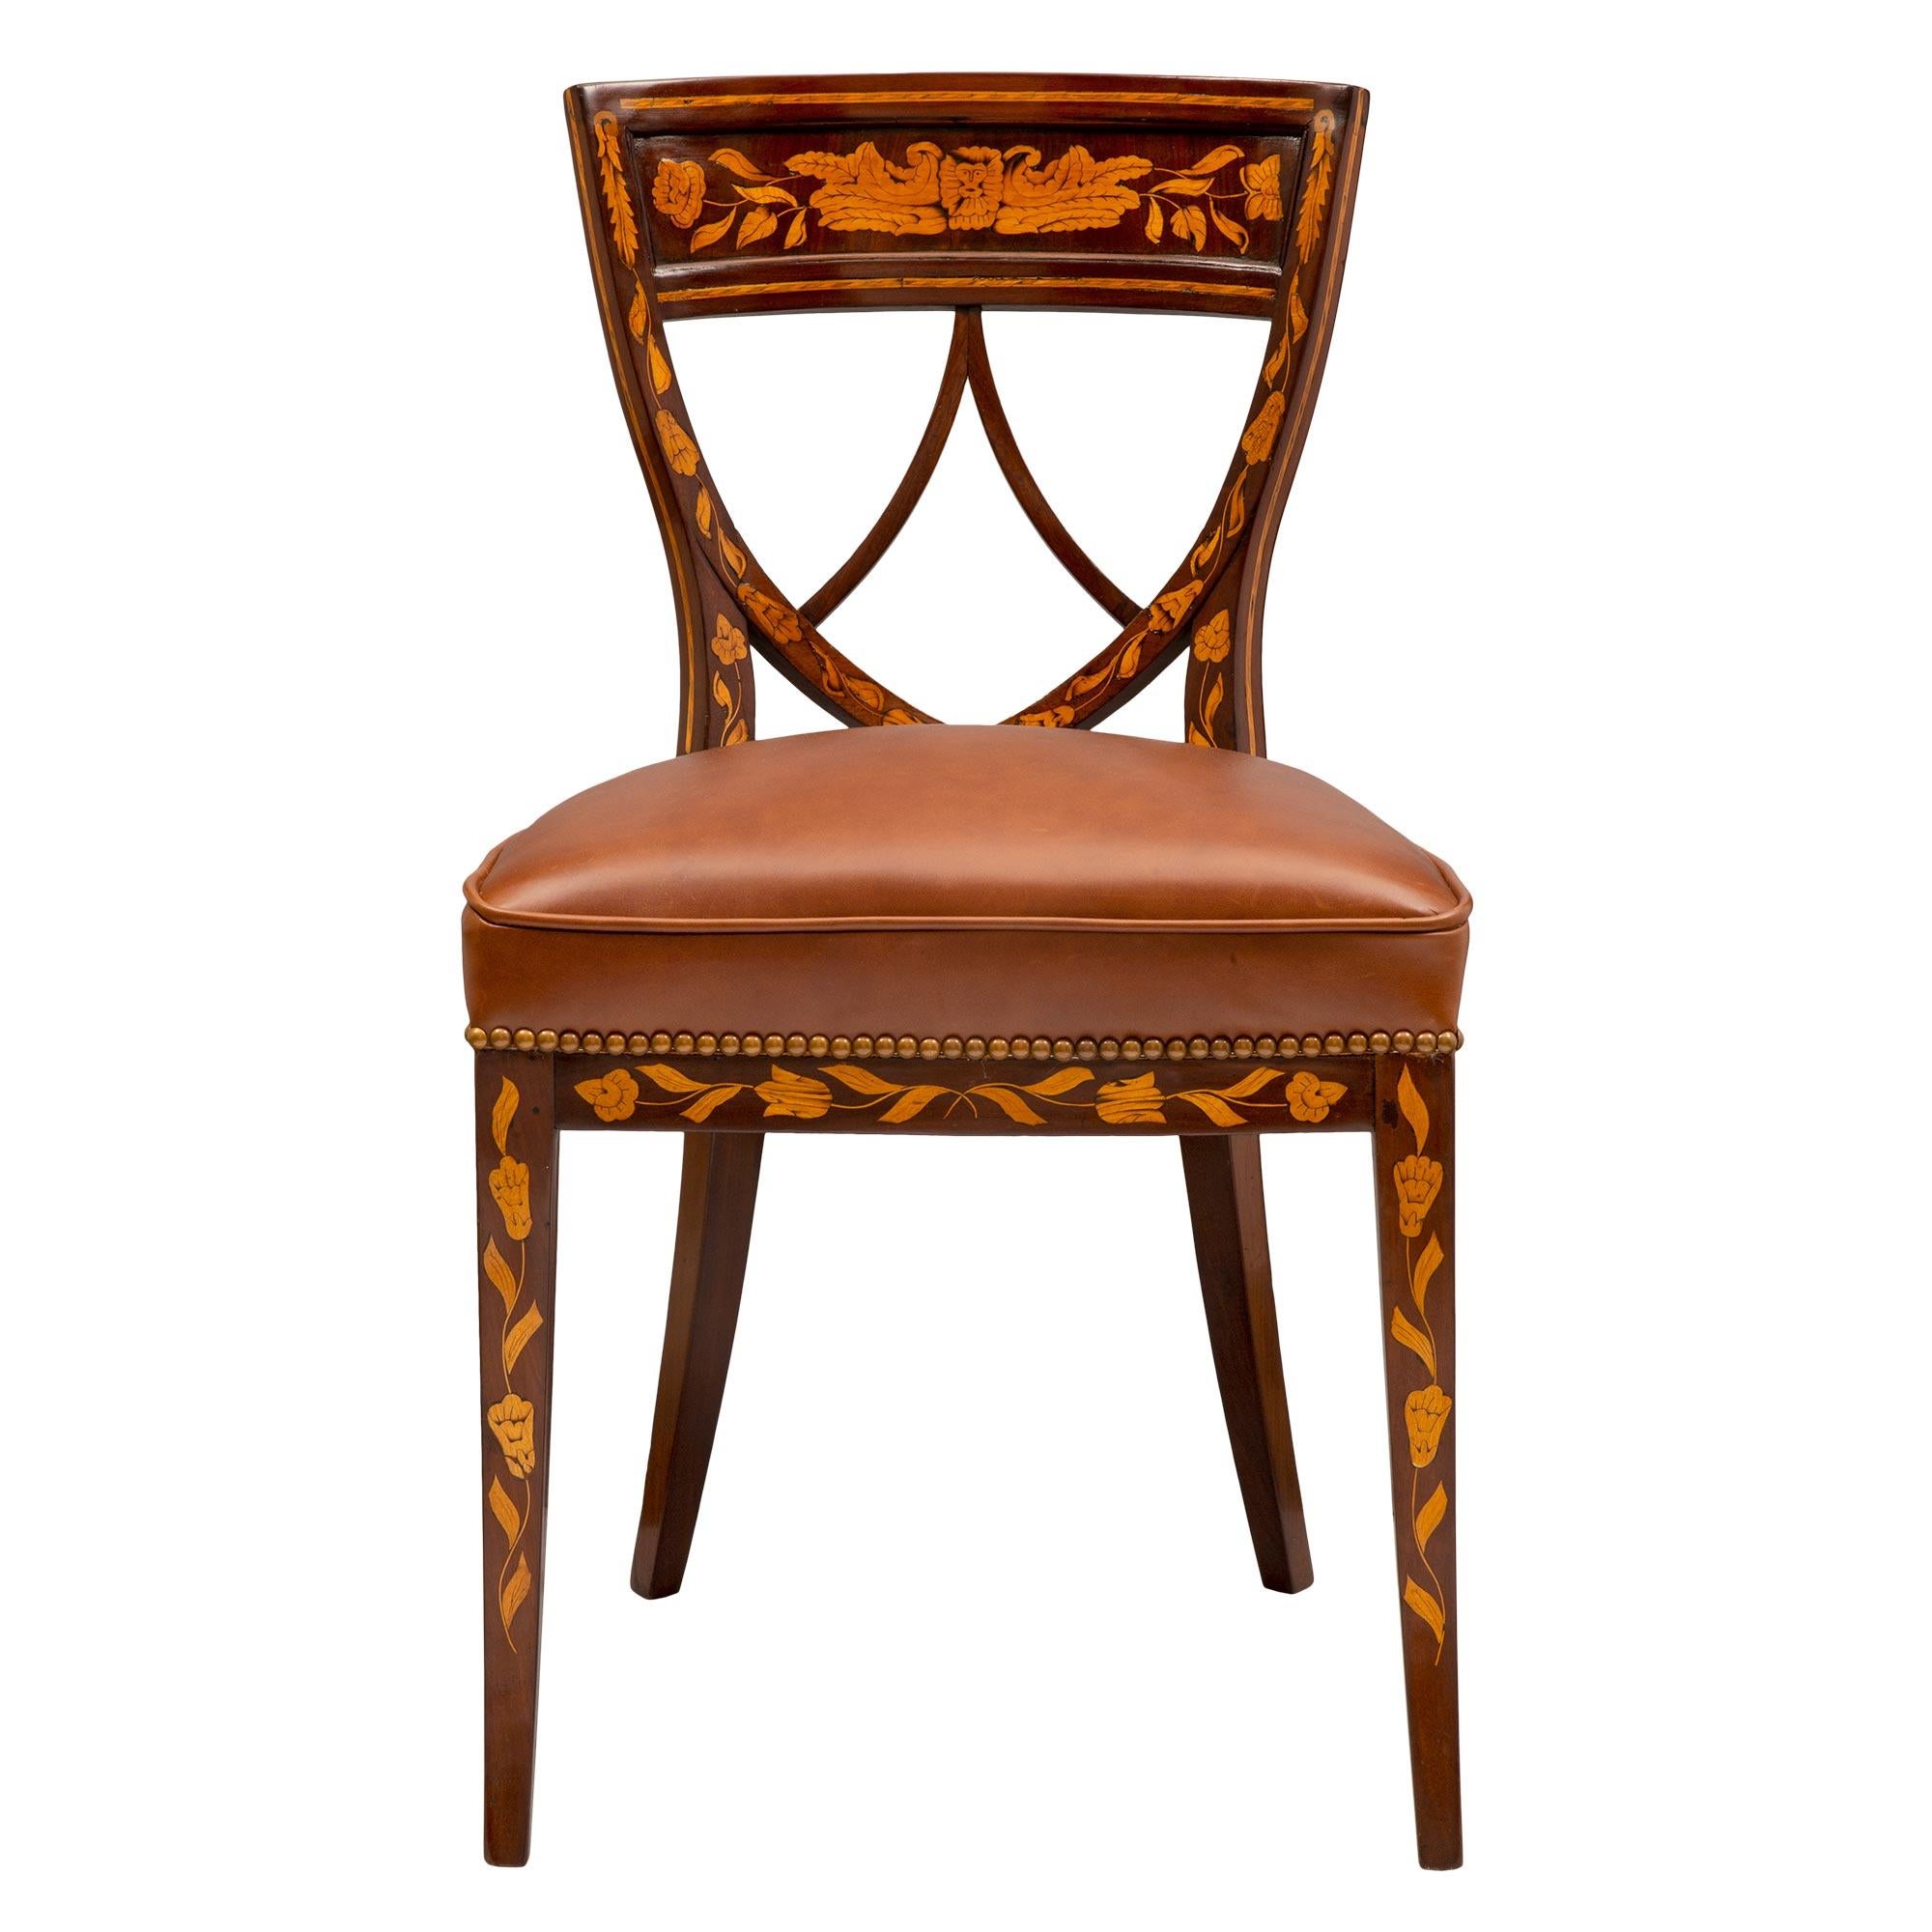 Un ensemble exceptionnel et complet de quatre chaises latérales de style Louis XVI en acajou, noyer et érable, datant du 19e siècle. Chaque belle chaise est surélevée par d'élégants pieds en acajou légèrement incurvés, avec des motifs feuillagés en